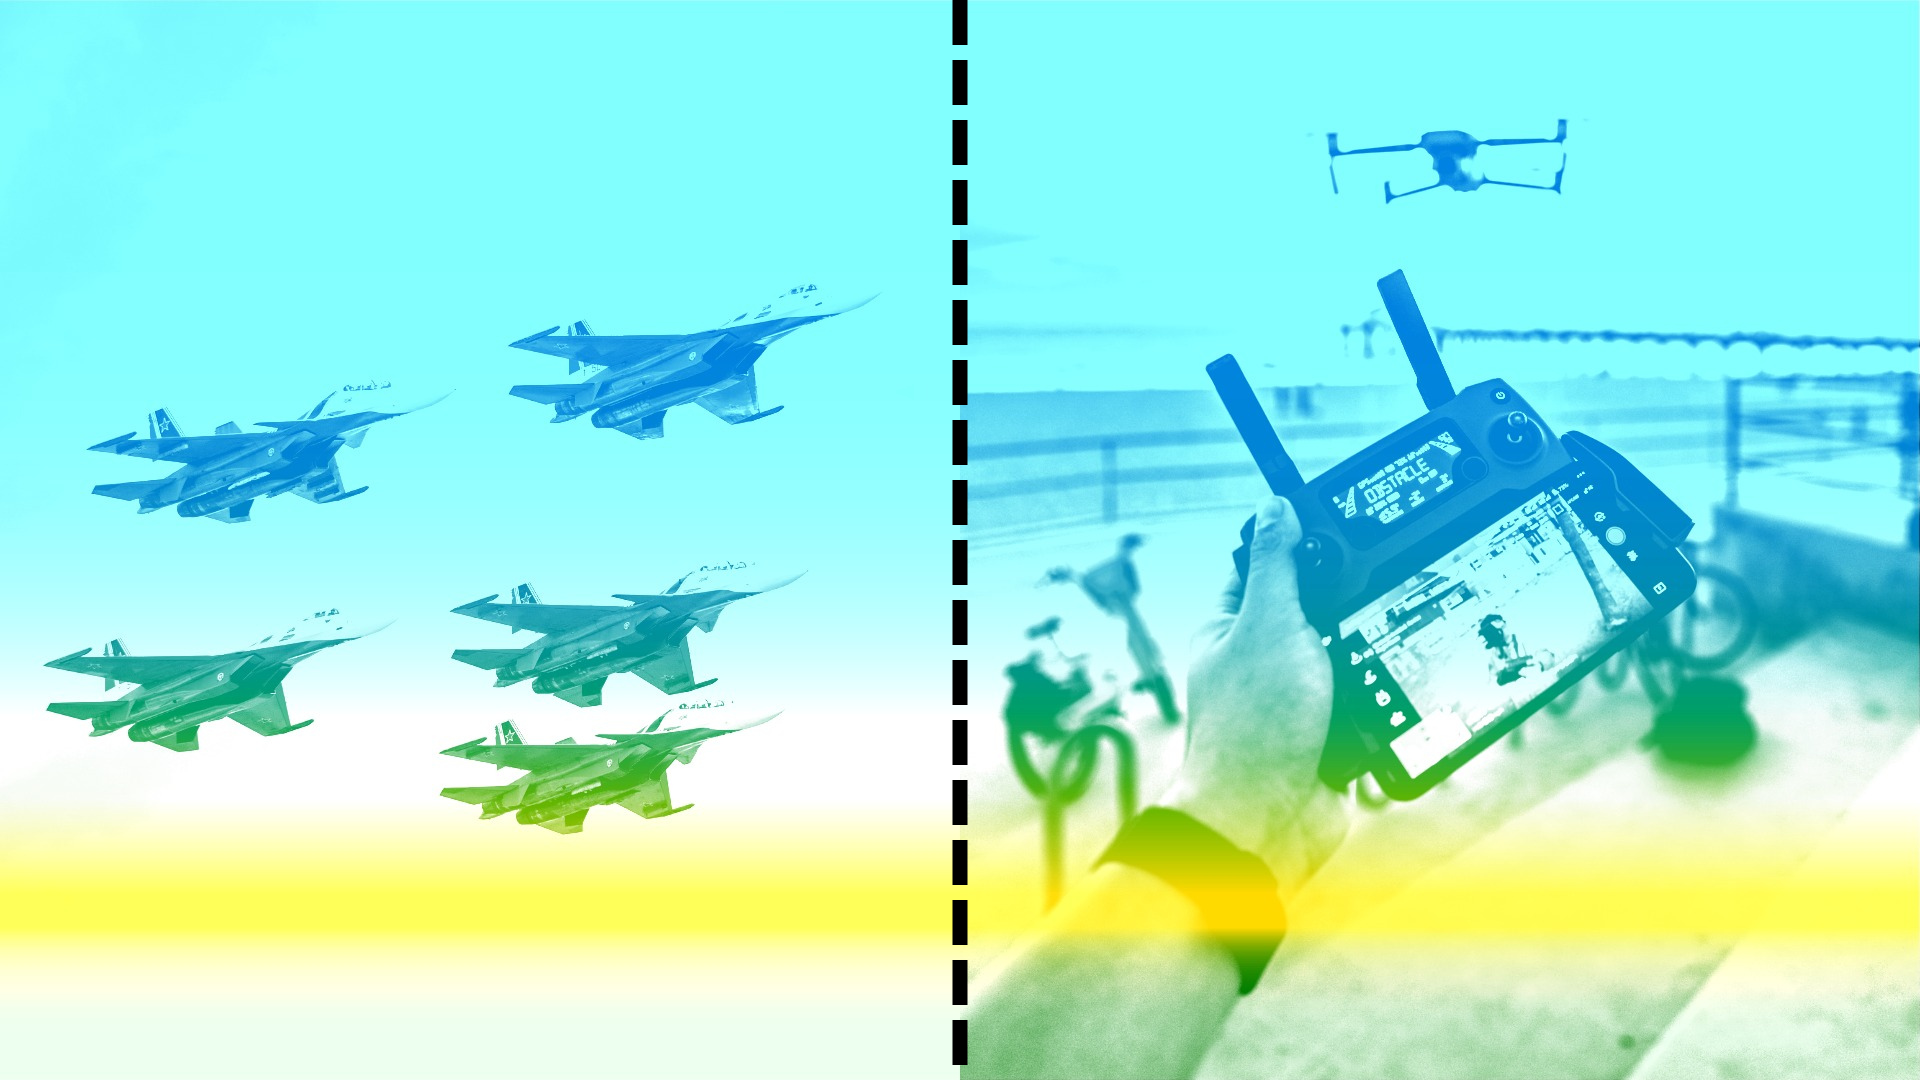 une image d'une flotte d'avions militaires sur la gauche. À droite, une image des mains d'une personne contrôlant un drone vu au loin. Les images sont séparées par une ligne perforée.